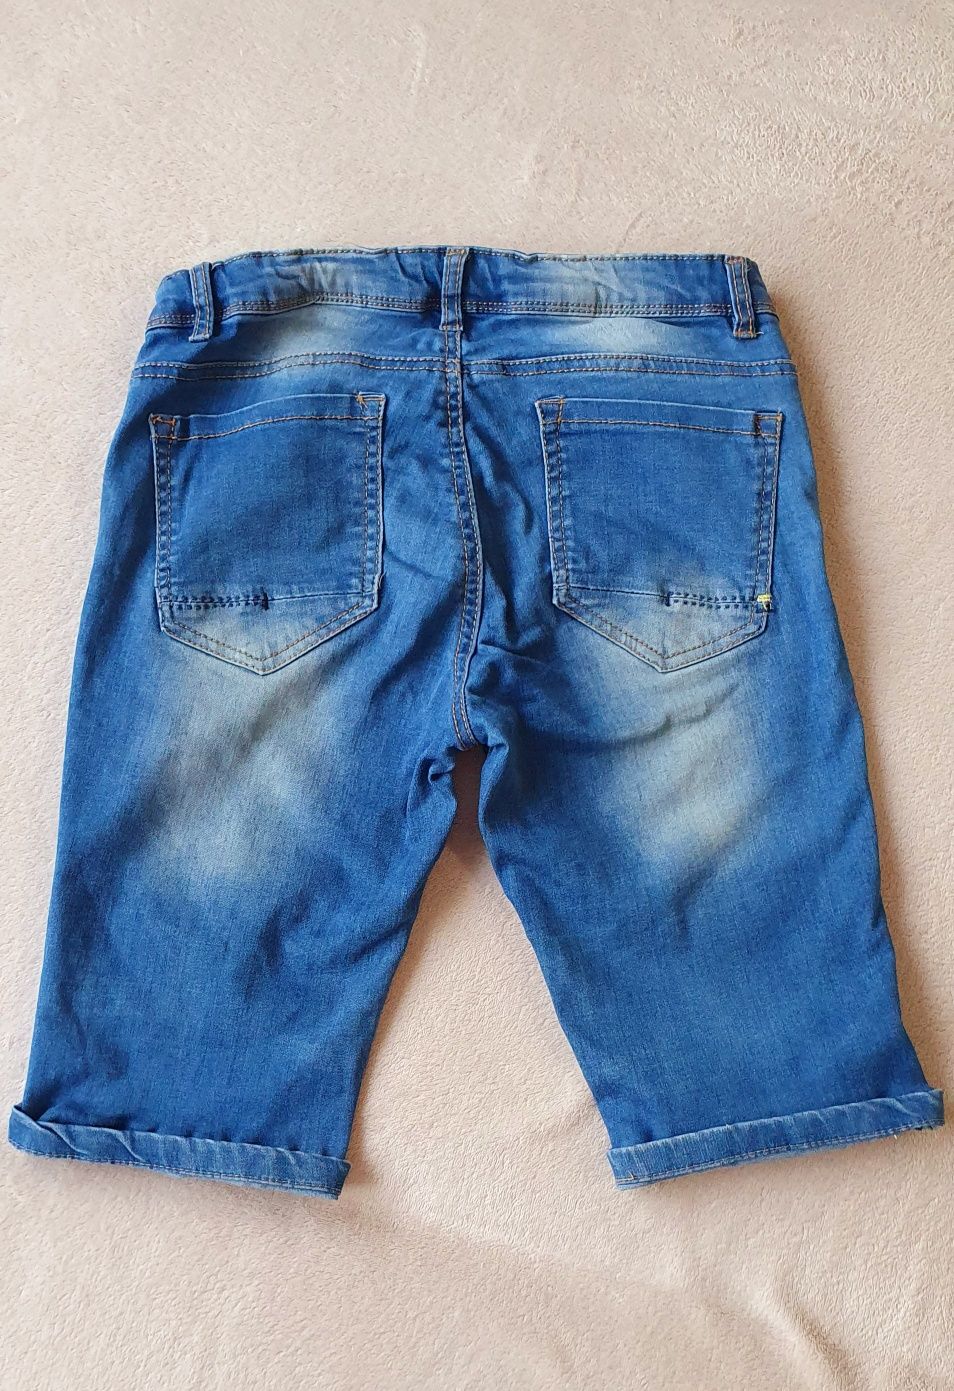 Продам джинсовые шорты для мальчика-подростка.12-13 лет( 152 см)